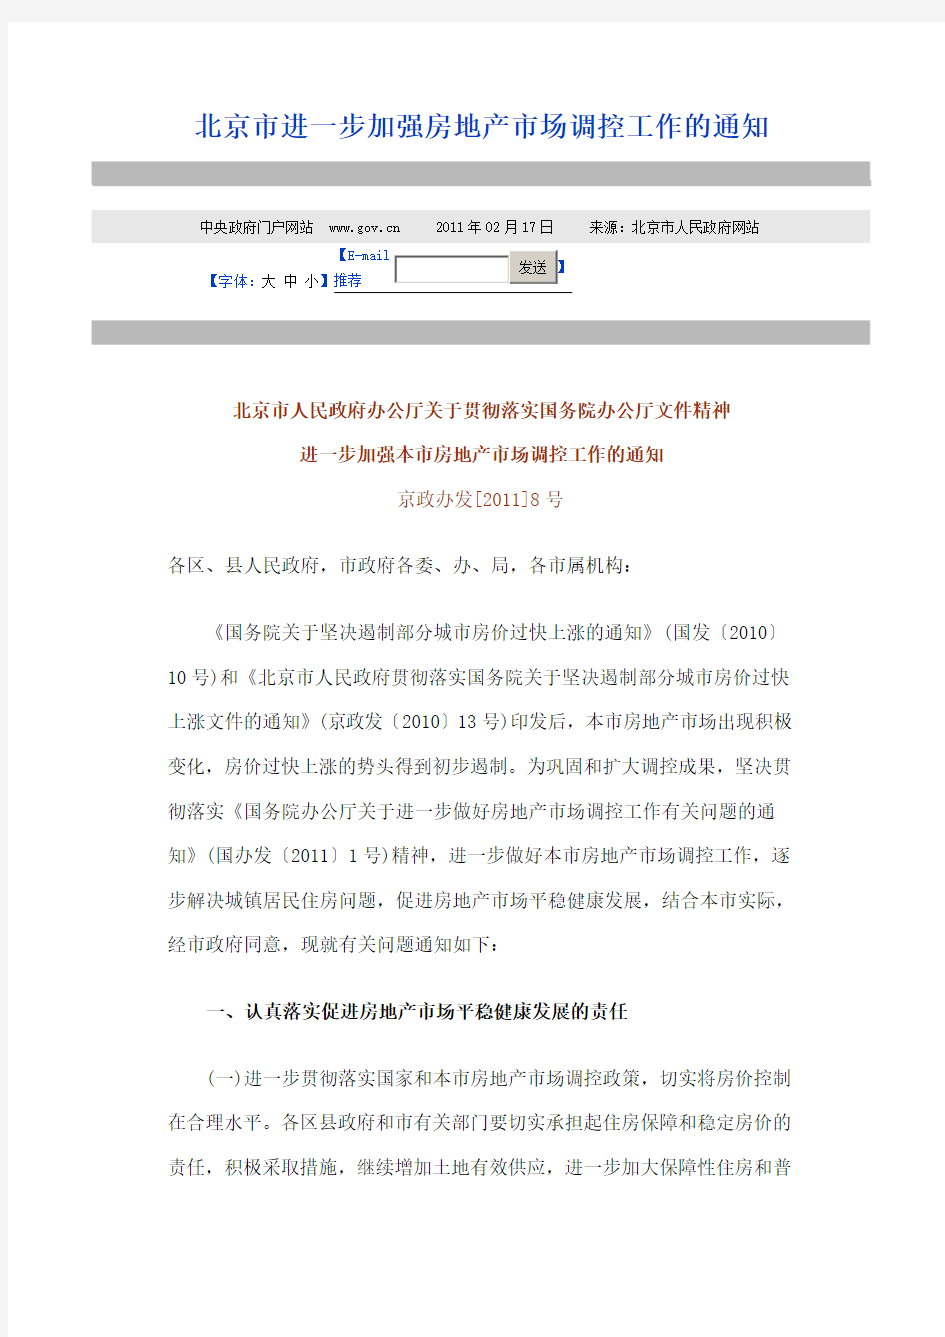 北京市进一步加强房地产市场调控工作的通知[2011]8号